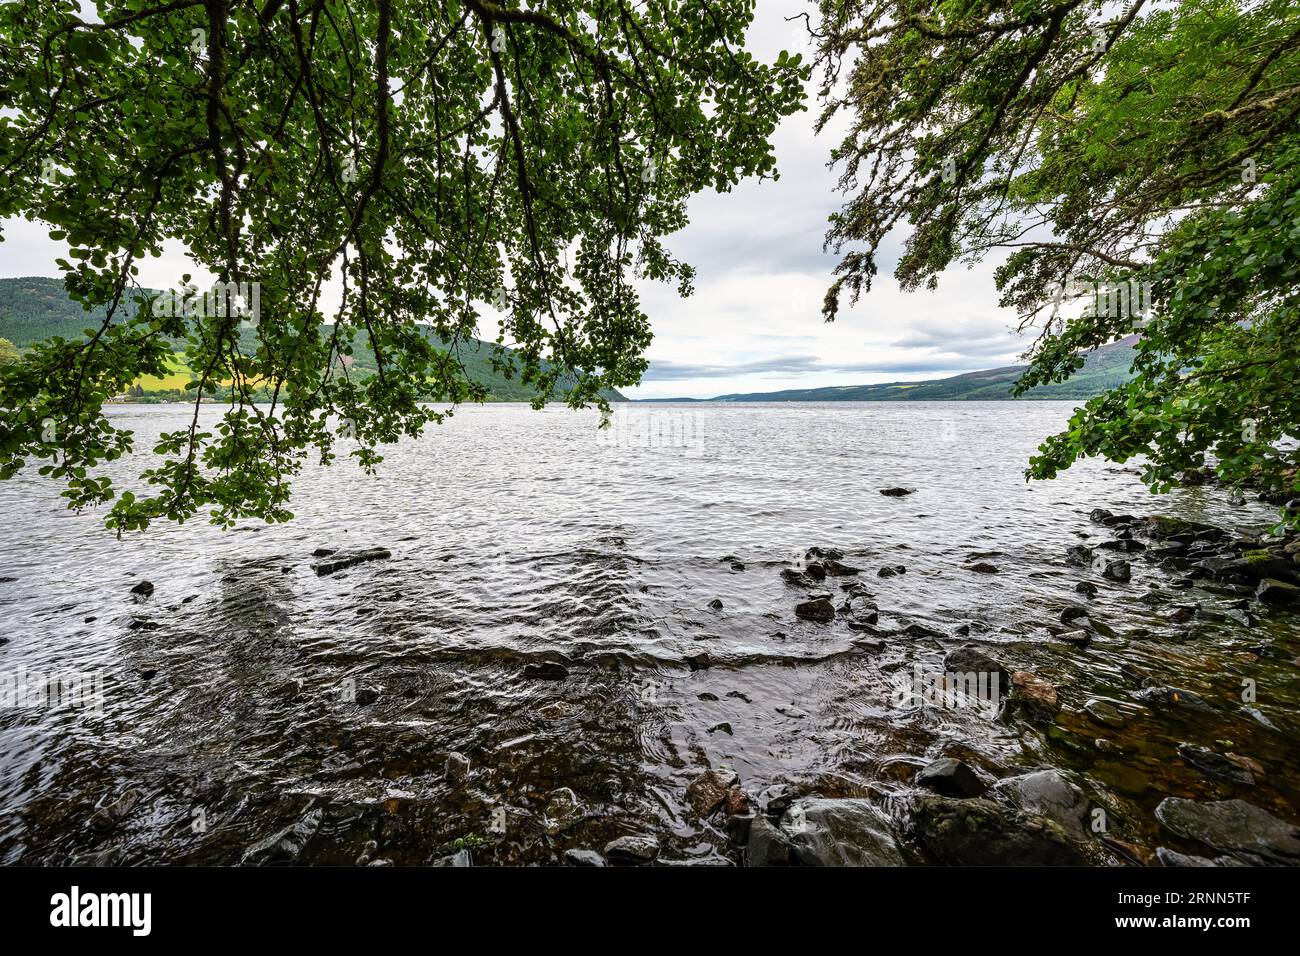 Rivage du Loch Ness en Ecosse, plein de végétation et d'arbres, lac célèbre pour son monstre Nessi. Banque D'Images